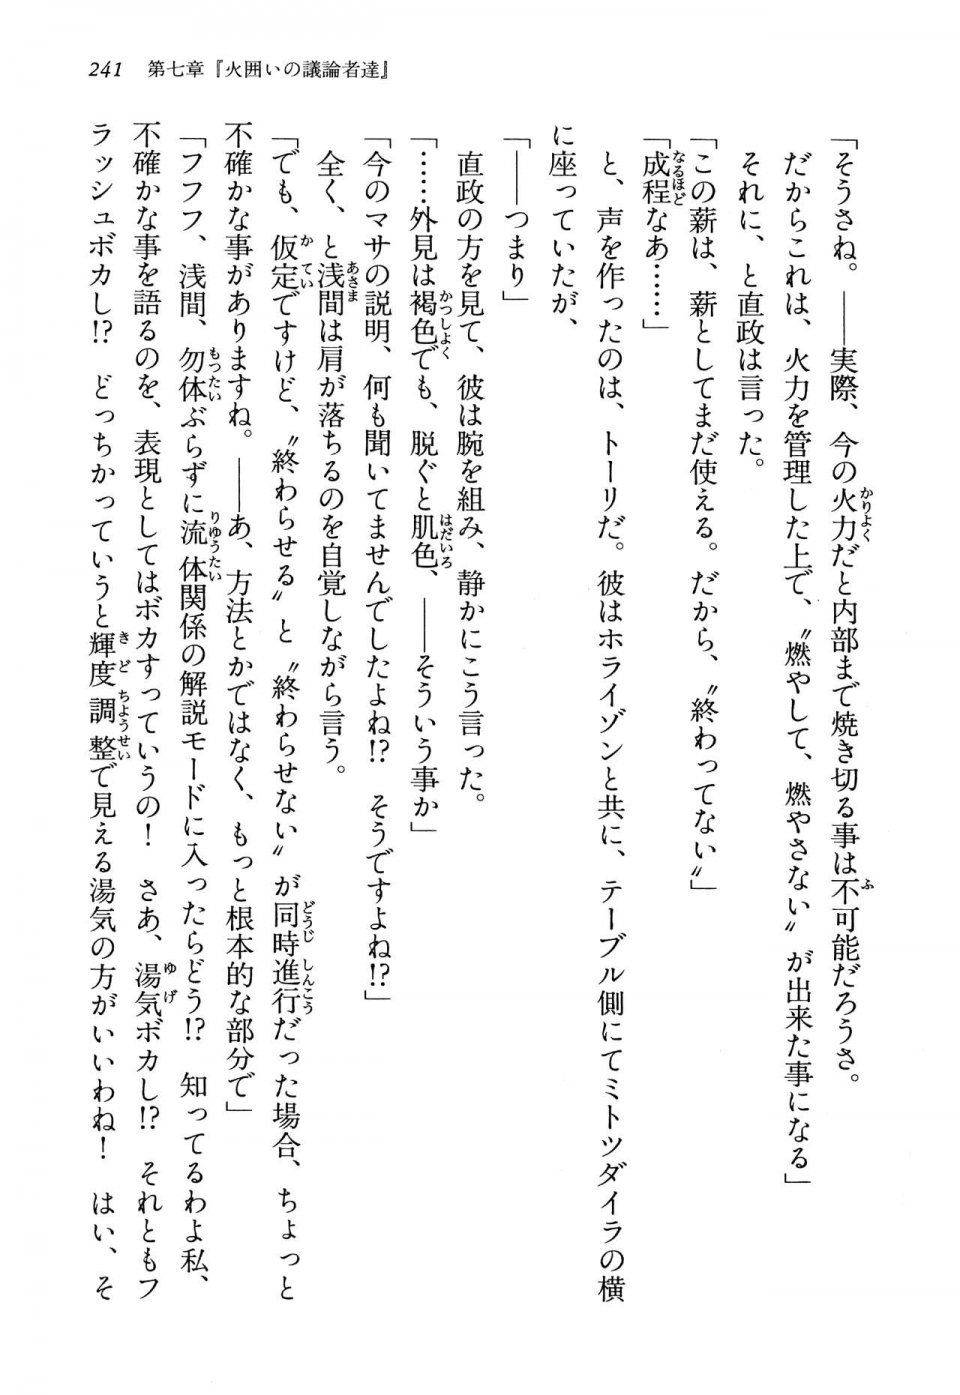 Kyoukai Senjou no Horizon LN Vol 13(6A) - Photo #241